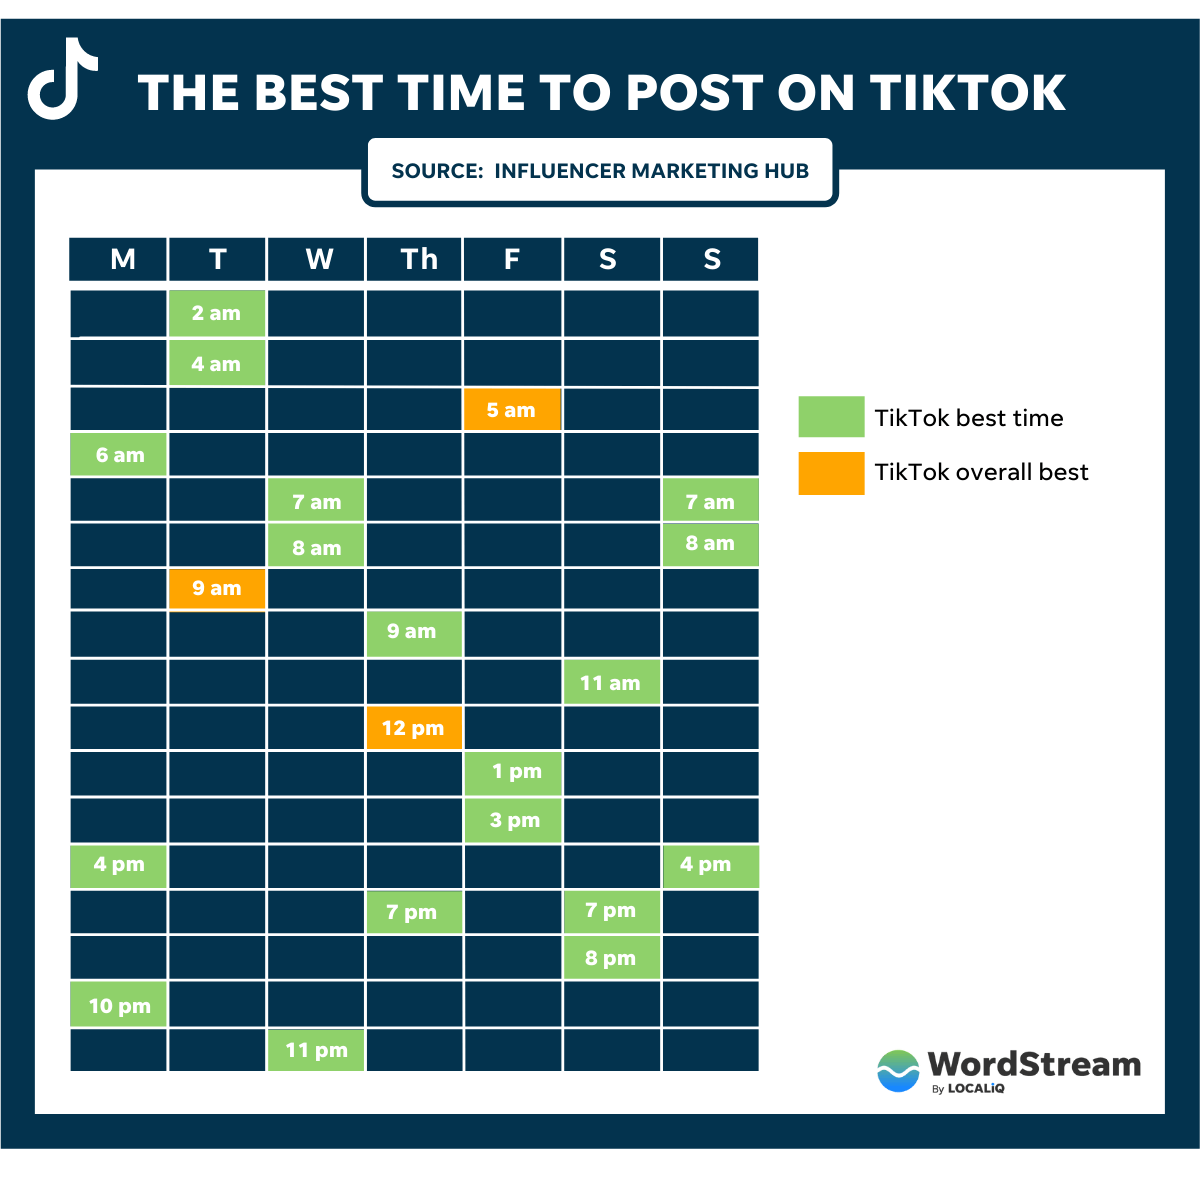 Khung giờ đăng TikTok theo Influencer Marketing Hub